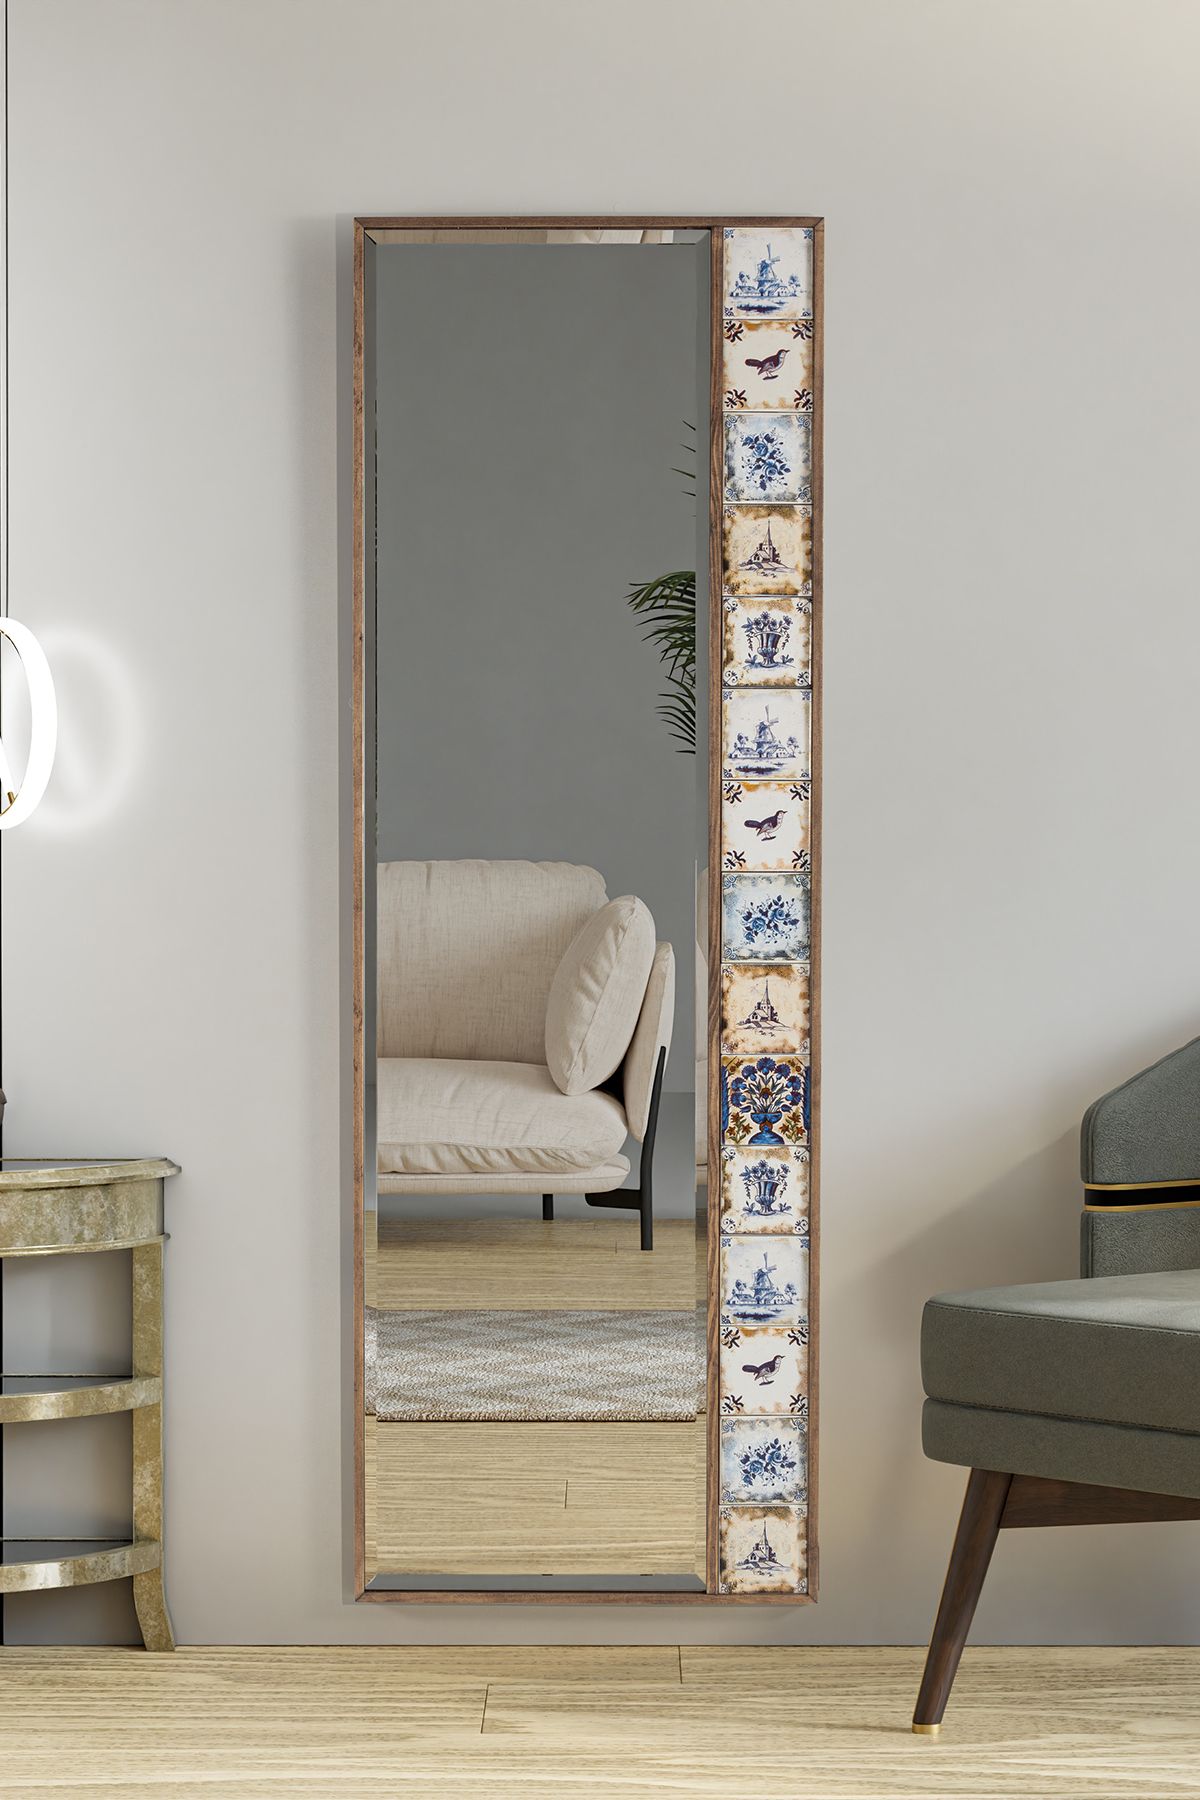 bluecape Selanik Çini Seramik 50x148 Cm Doğal Ağaç Çerçeveli Salon Ofis Mutfak Duvar Konsol Boy Aynası